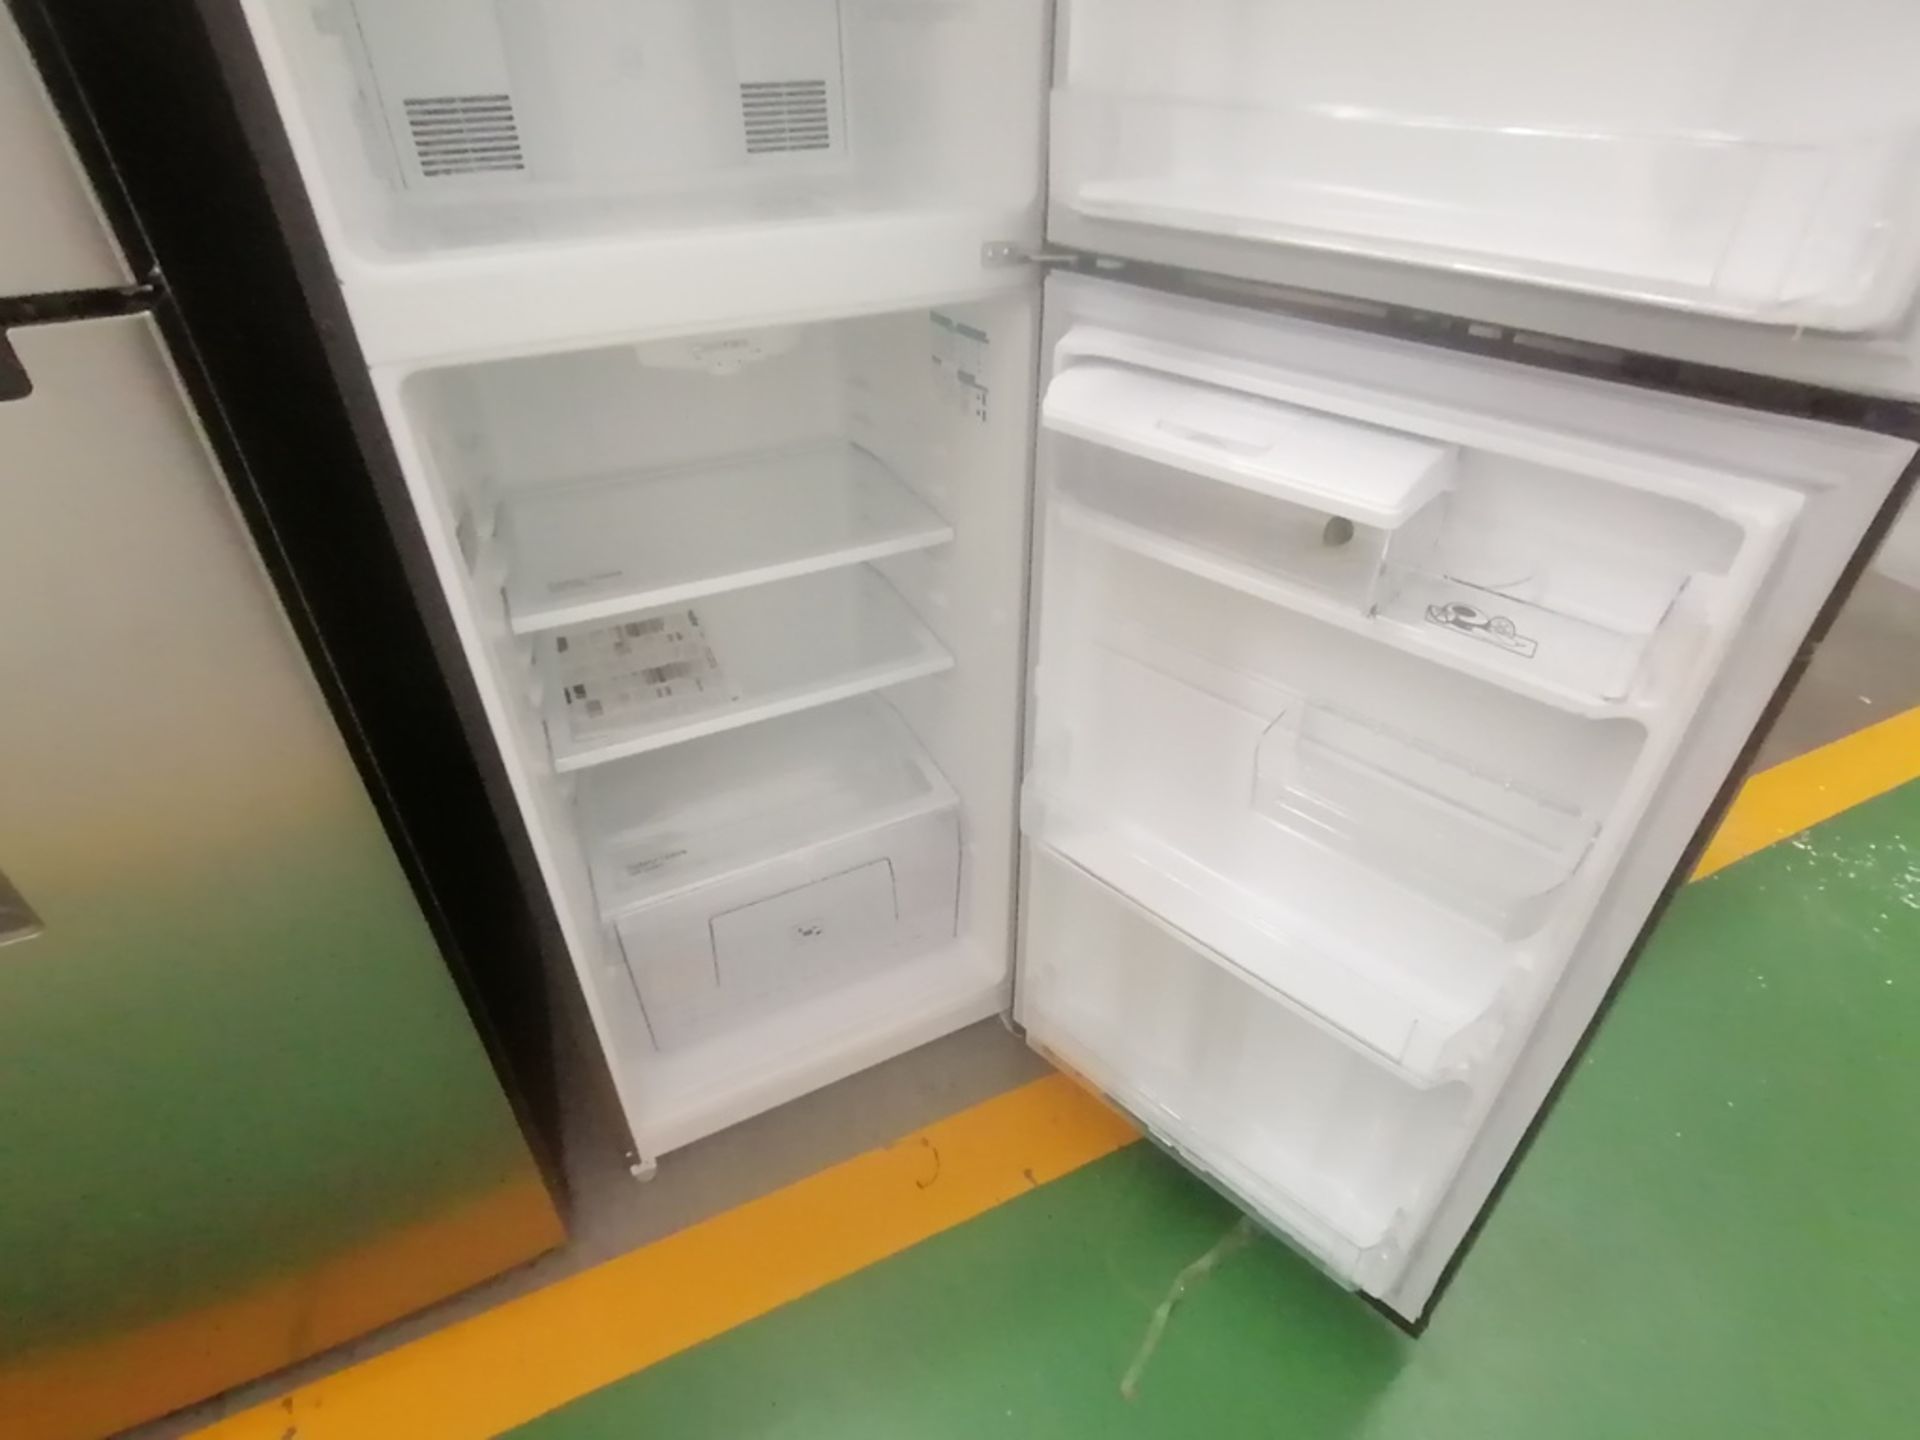 Lote de 2 refrigeradores incluye: 1 Refrigerador con dispensador de agua, Marca Mabe, Modelo RME360 - Image 9 of 15